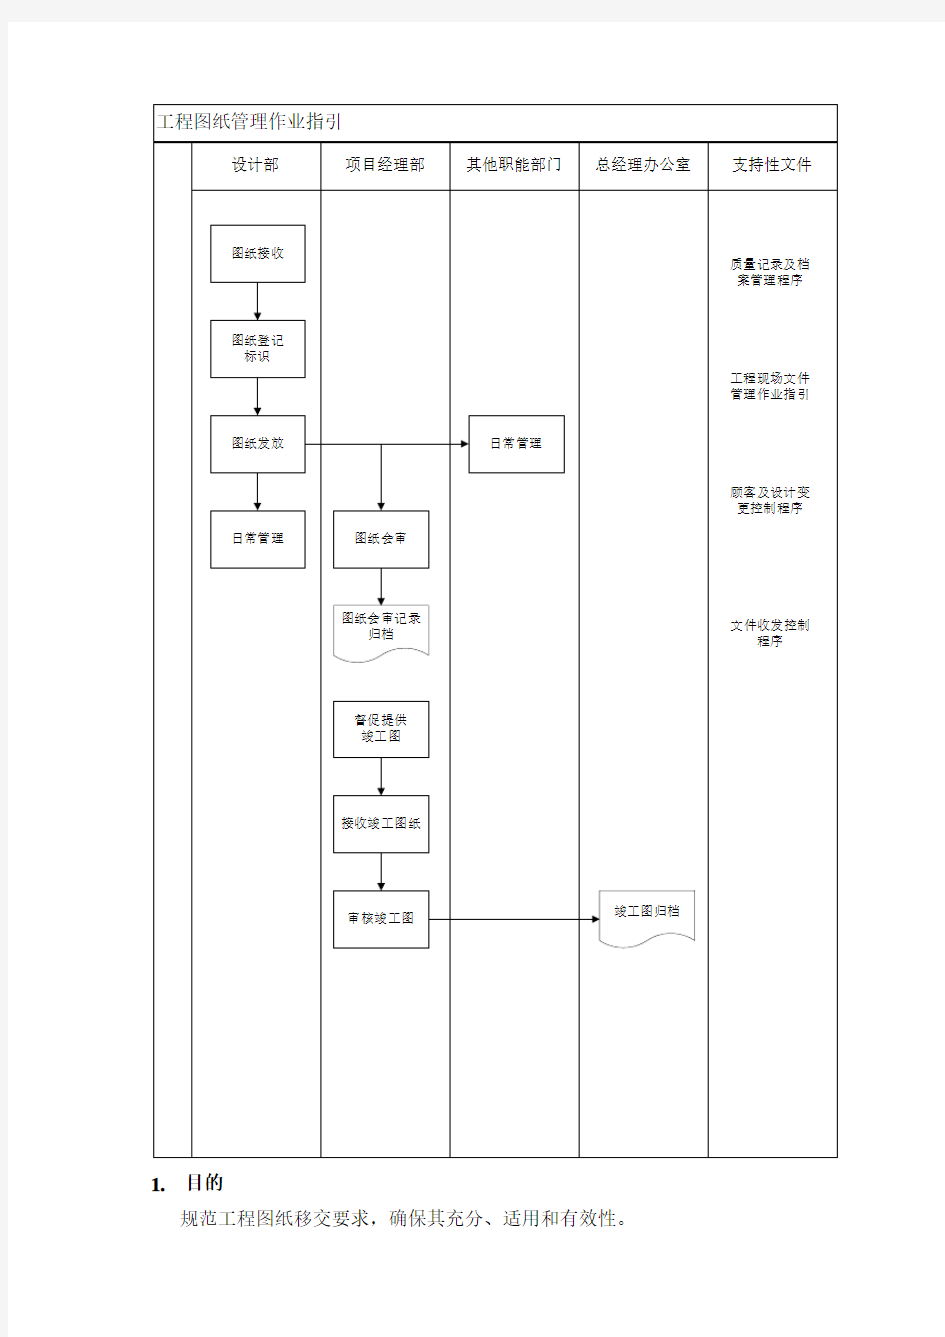 VKSY-WI-SJ013工程图纸管理作业指引